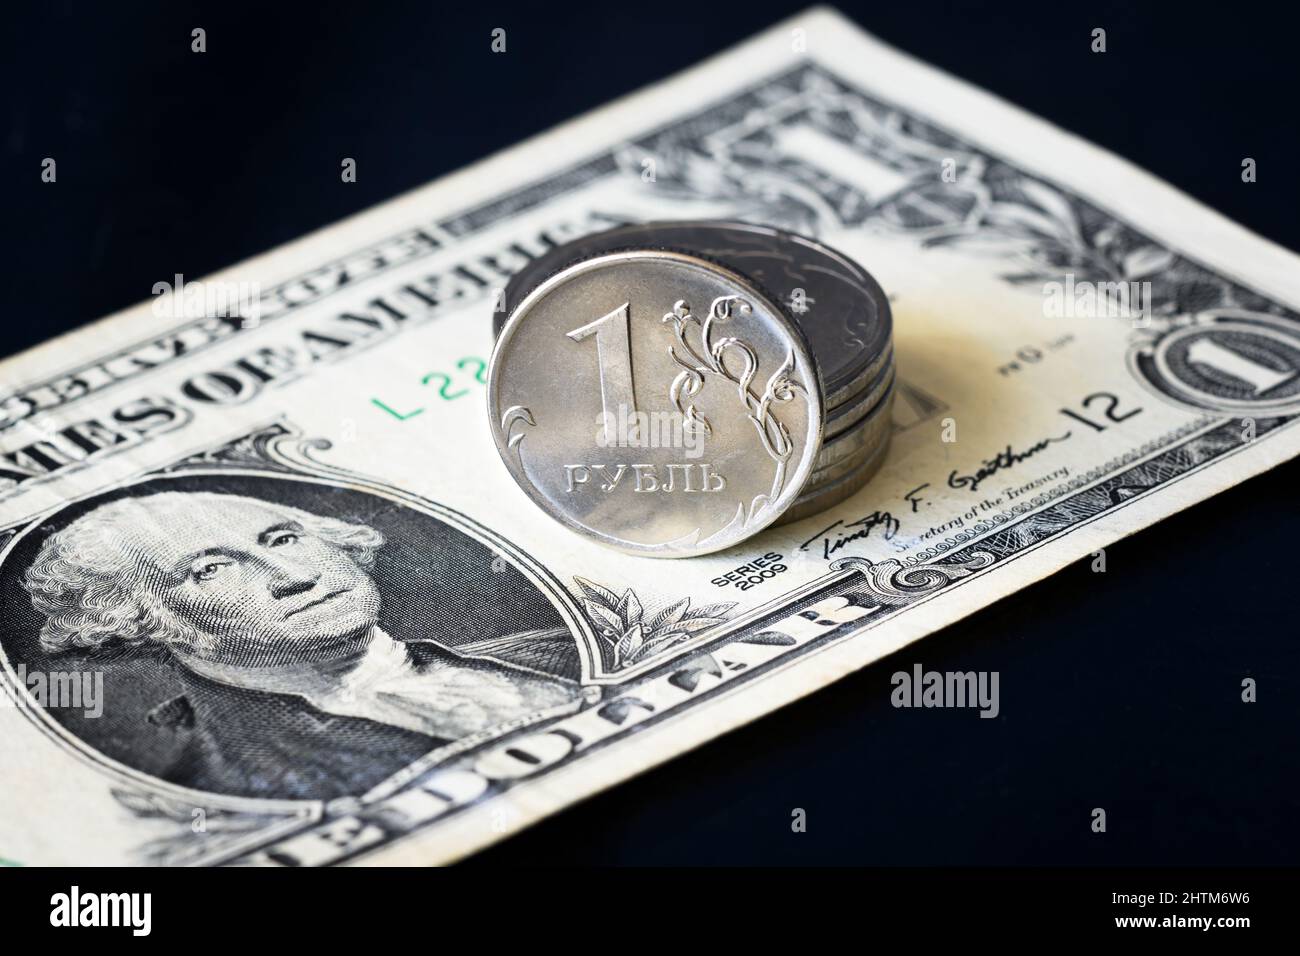 Russische Rubel-Münze und ein US-Dollar-Schein, Rubel-Geld steht unter dem Druck der Geopolitik. Konzept des Wechselkurses, der Abwertung des Rubels, der Inflation Stockfoto